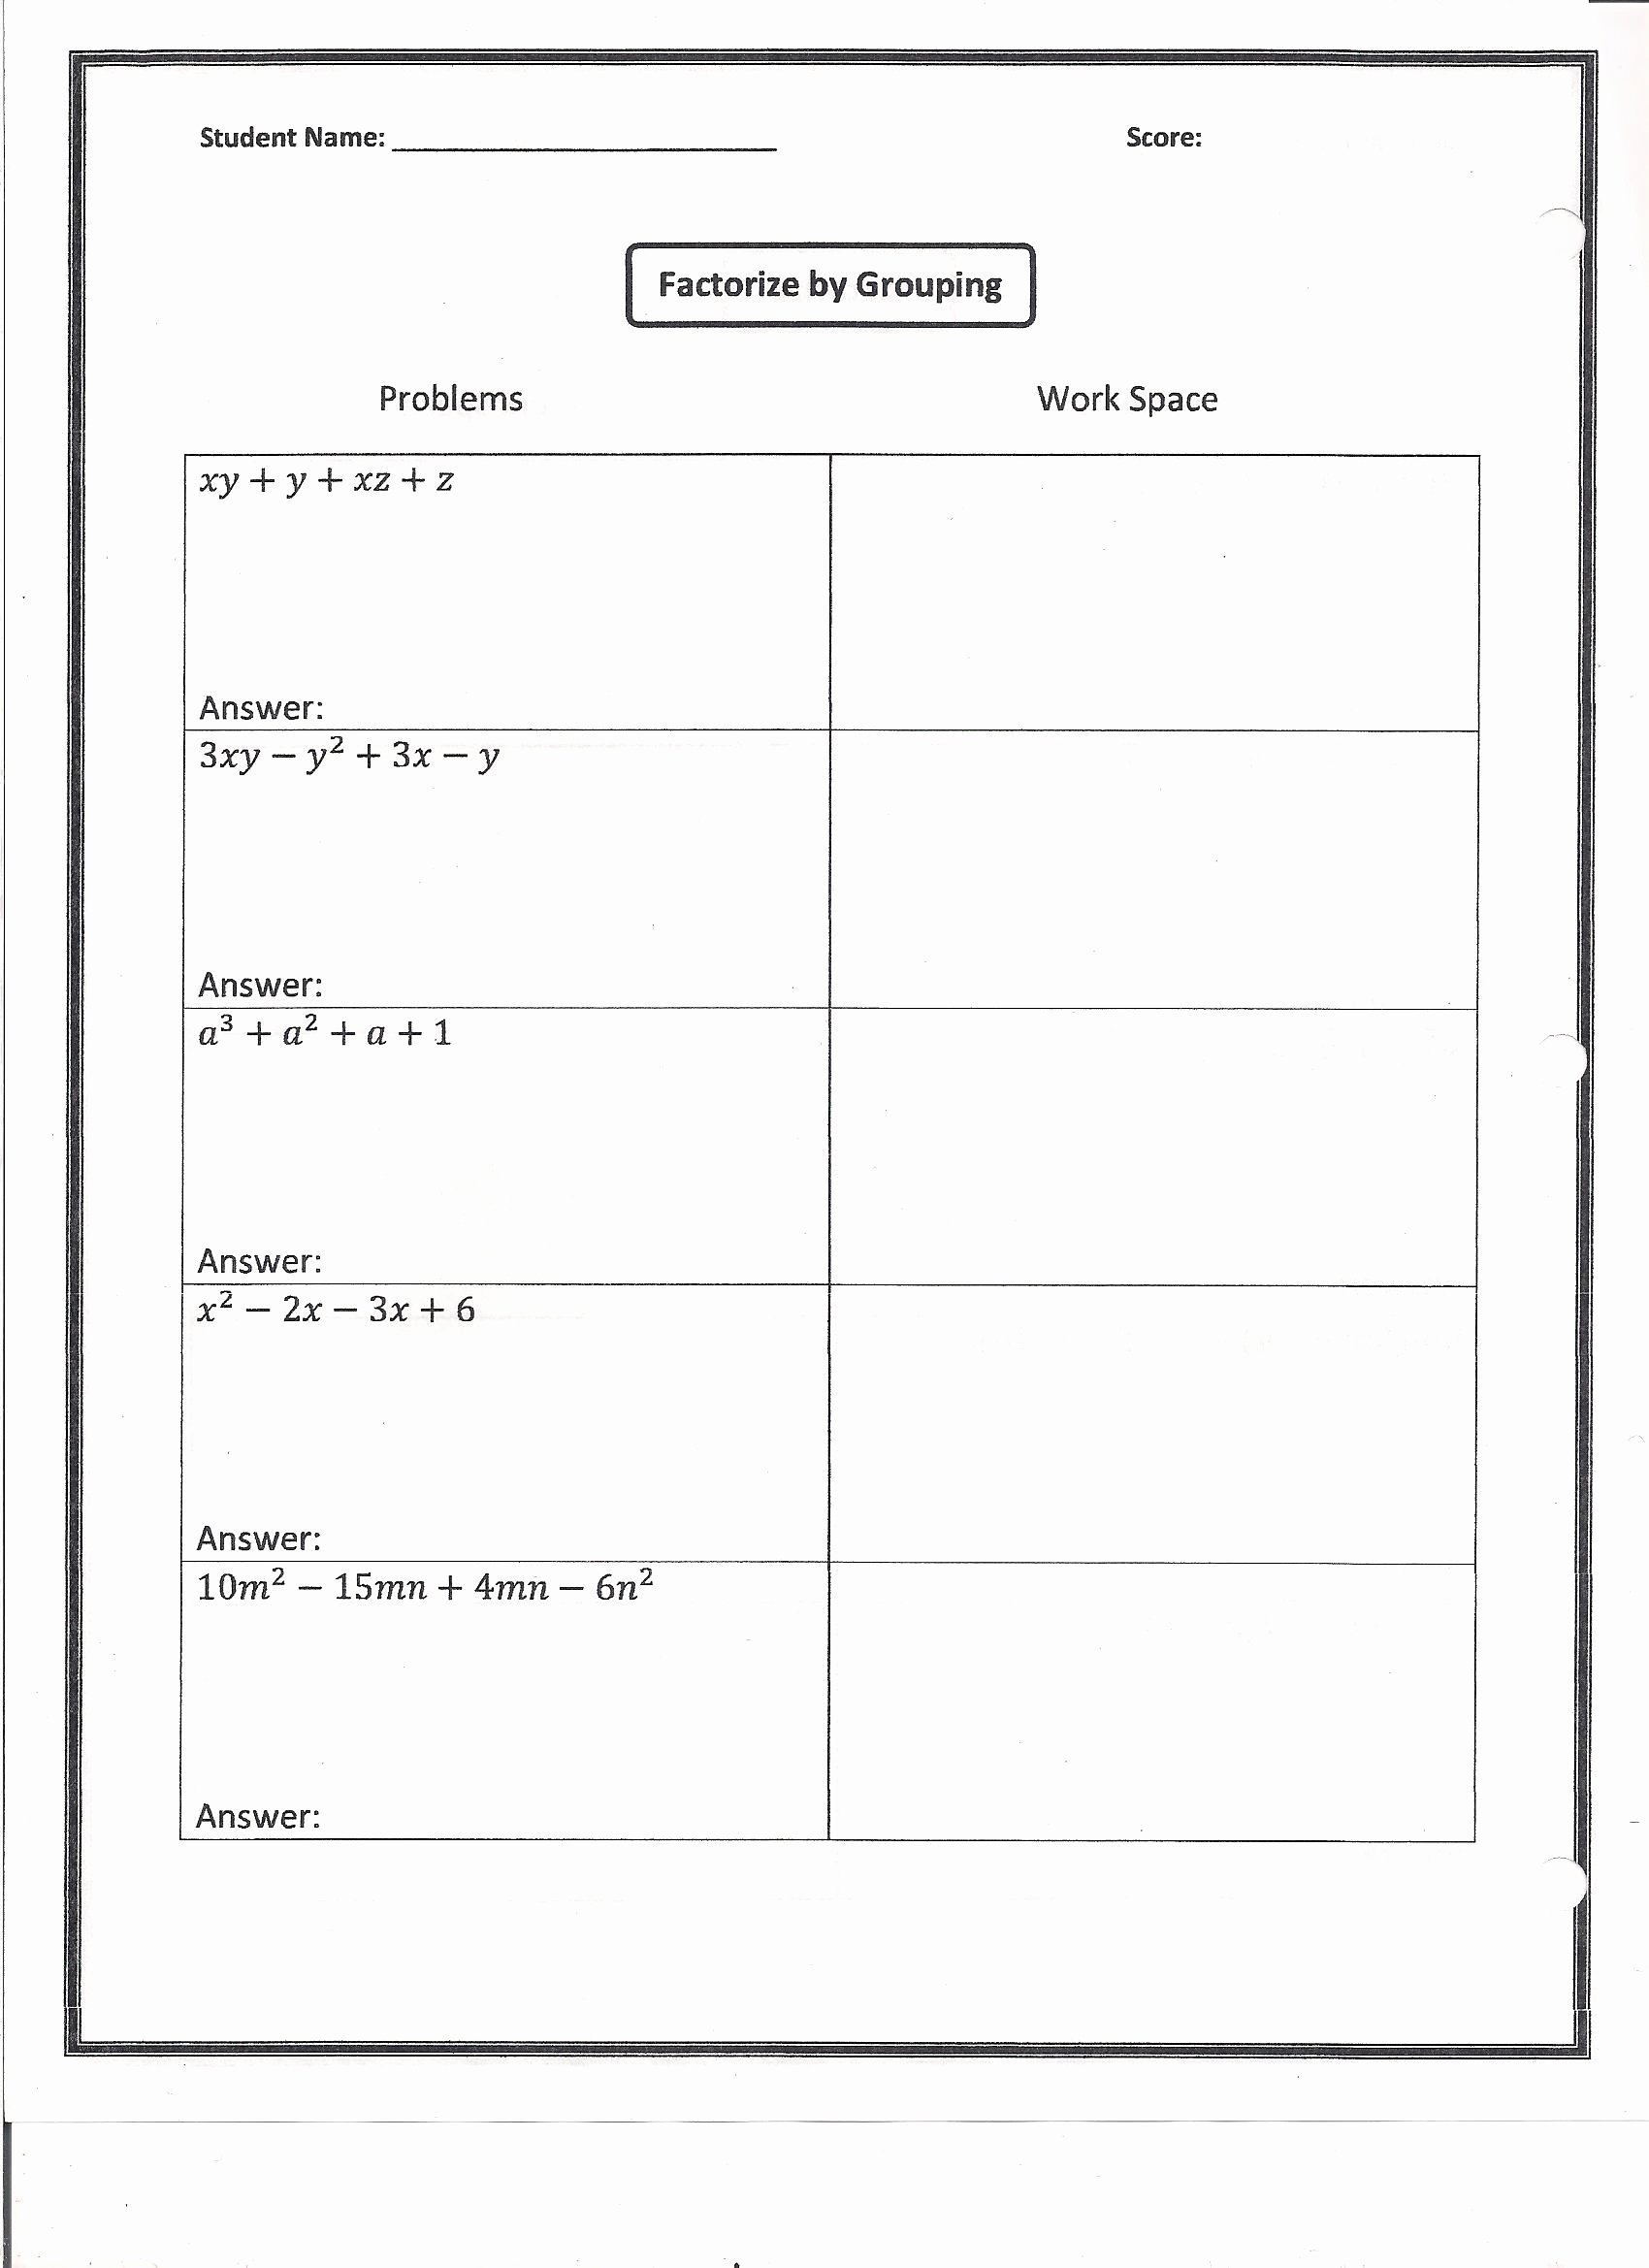 Factor by Grouping Worksheet Beautiful Factoring Homework Worksheet